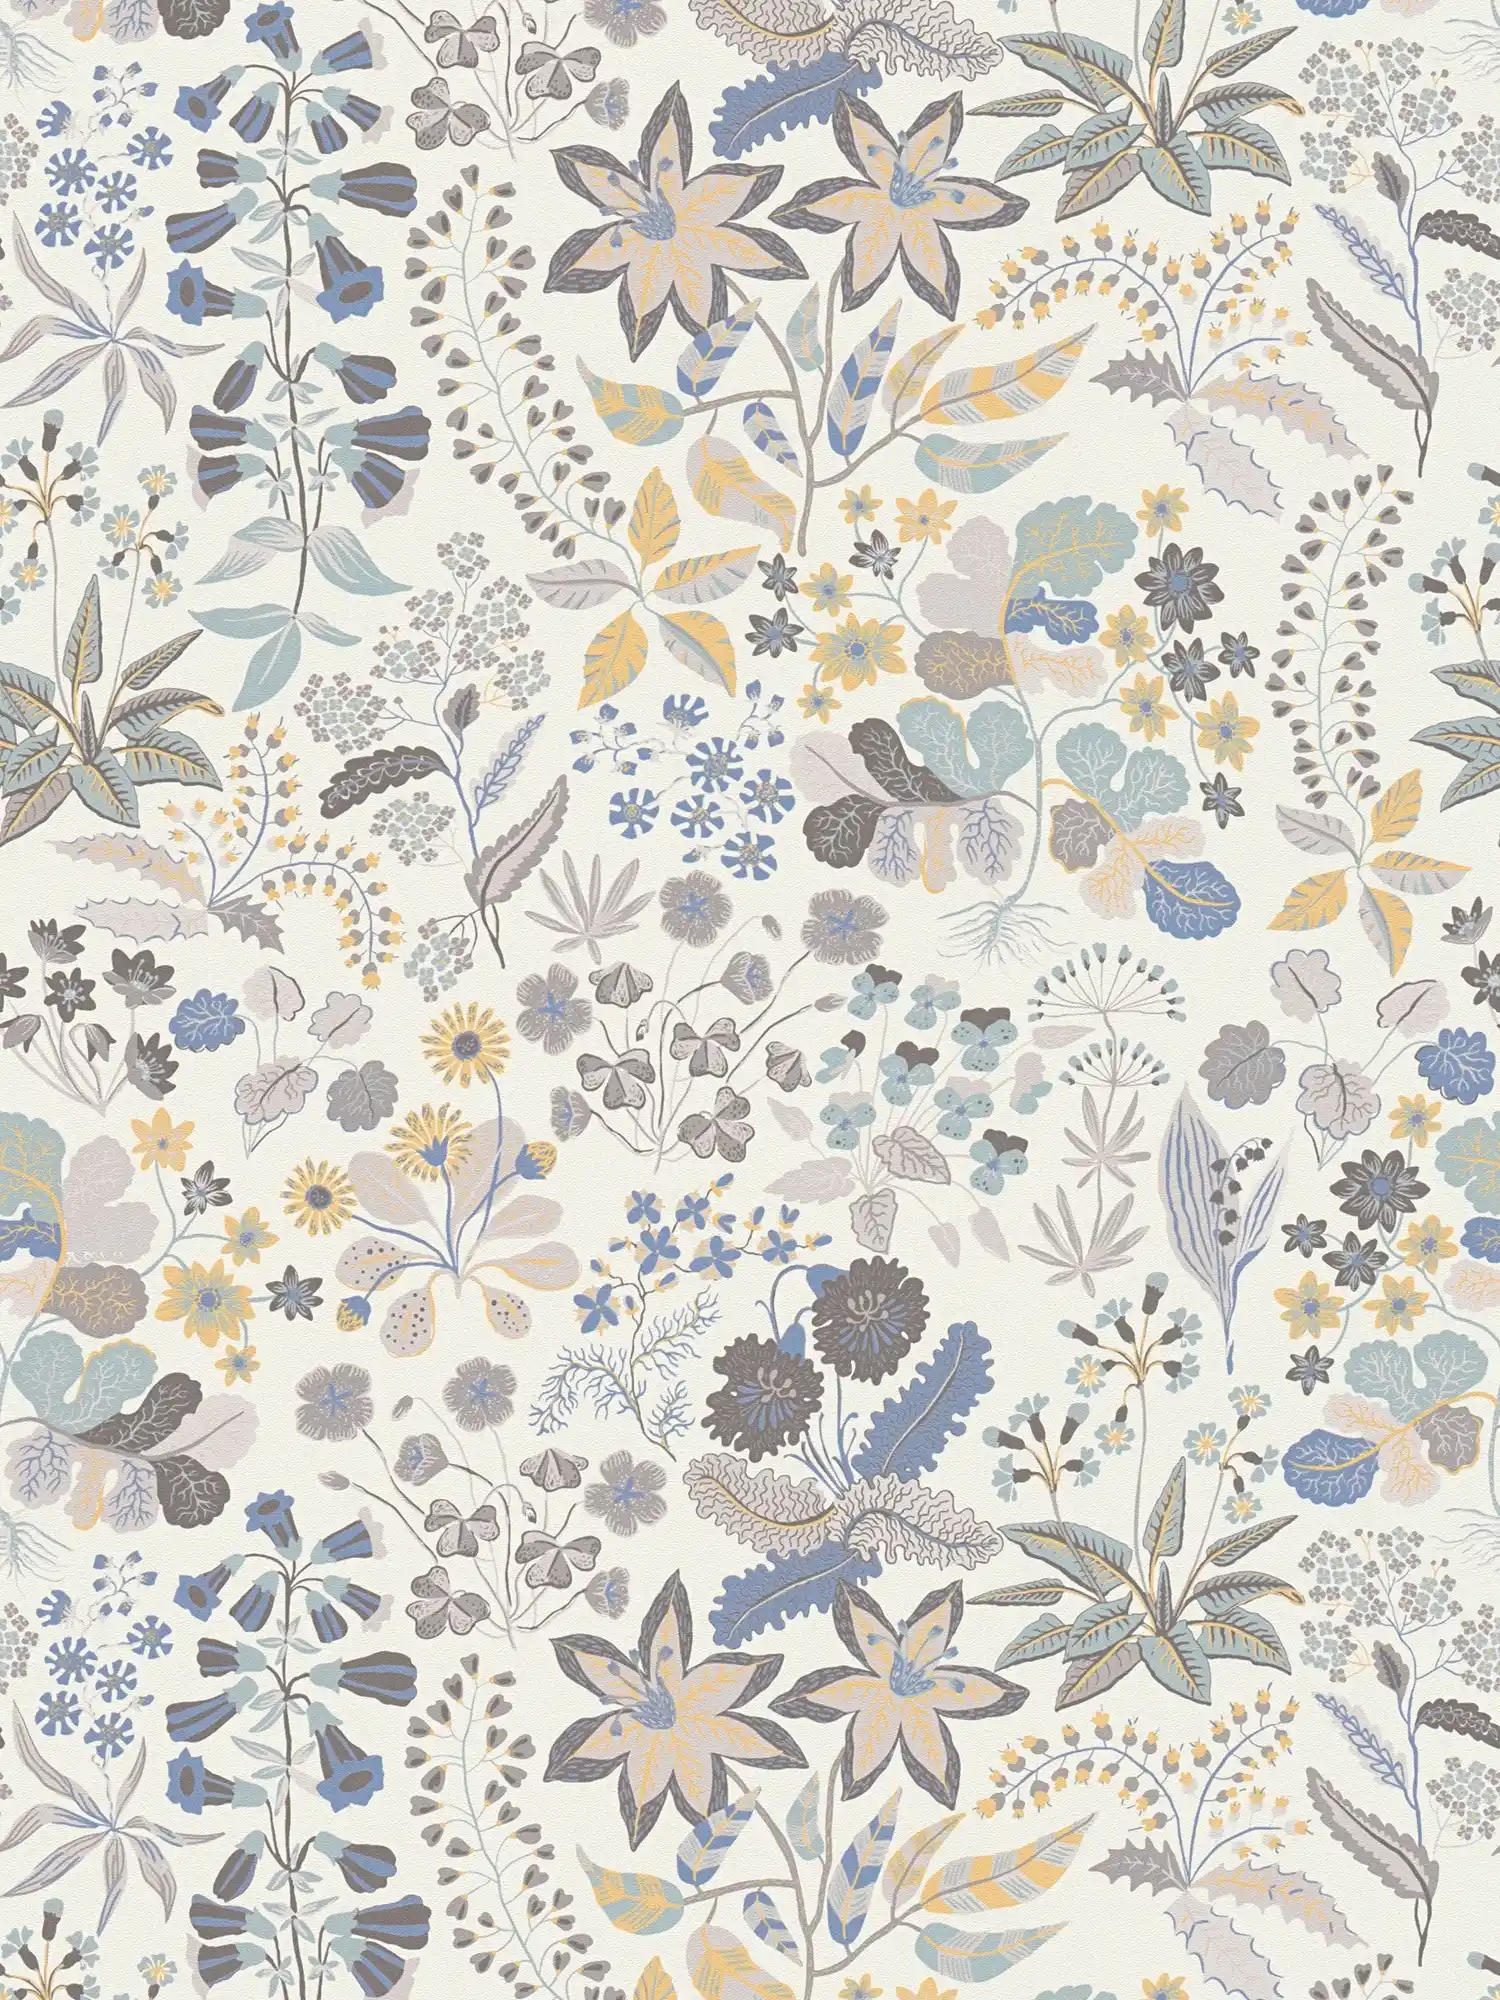 Vliesbehang met gedetailleerd bloemenpatroon - grijs, blauw, crème
